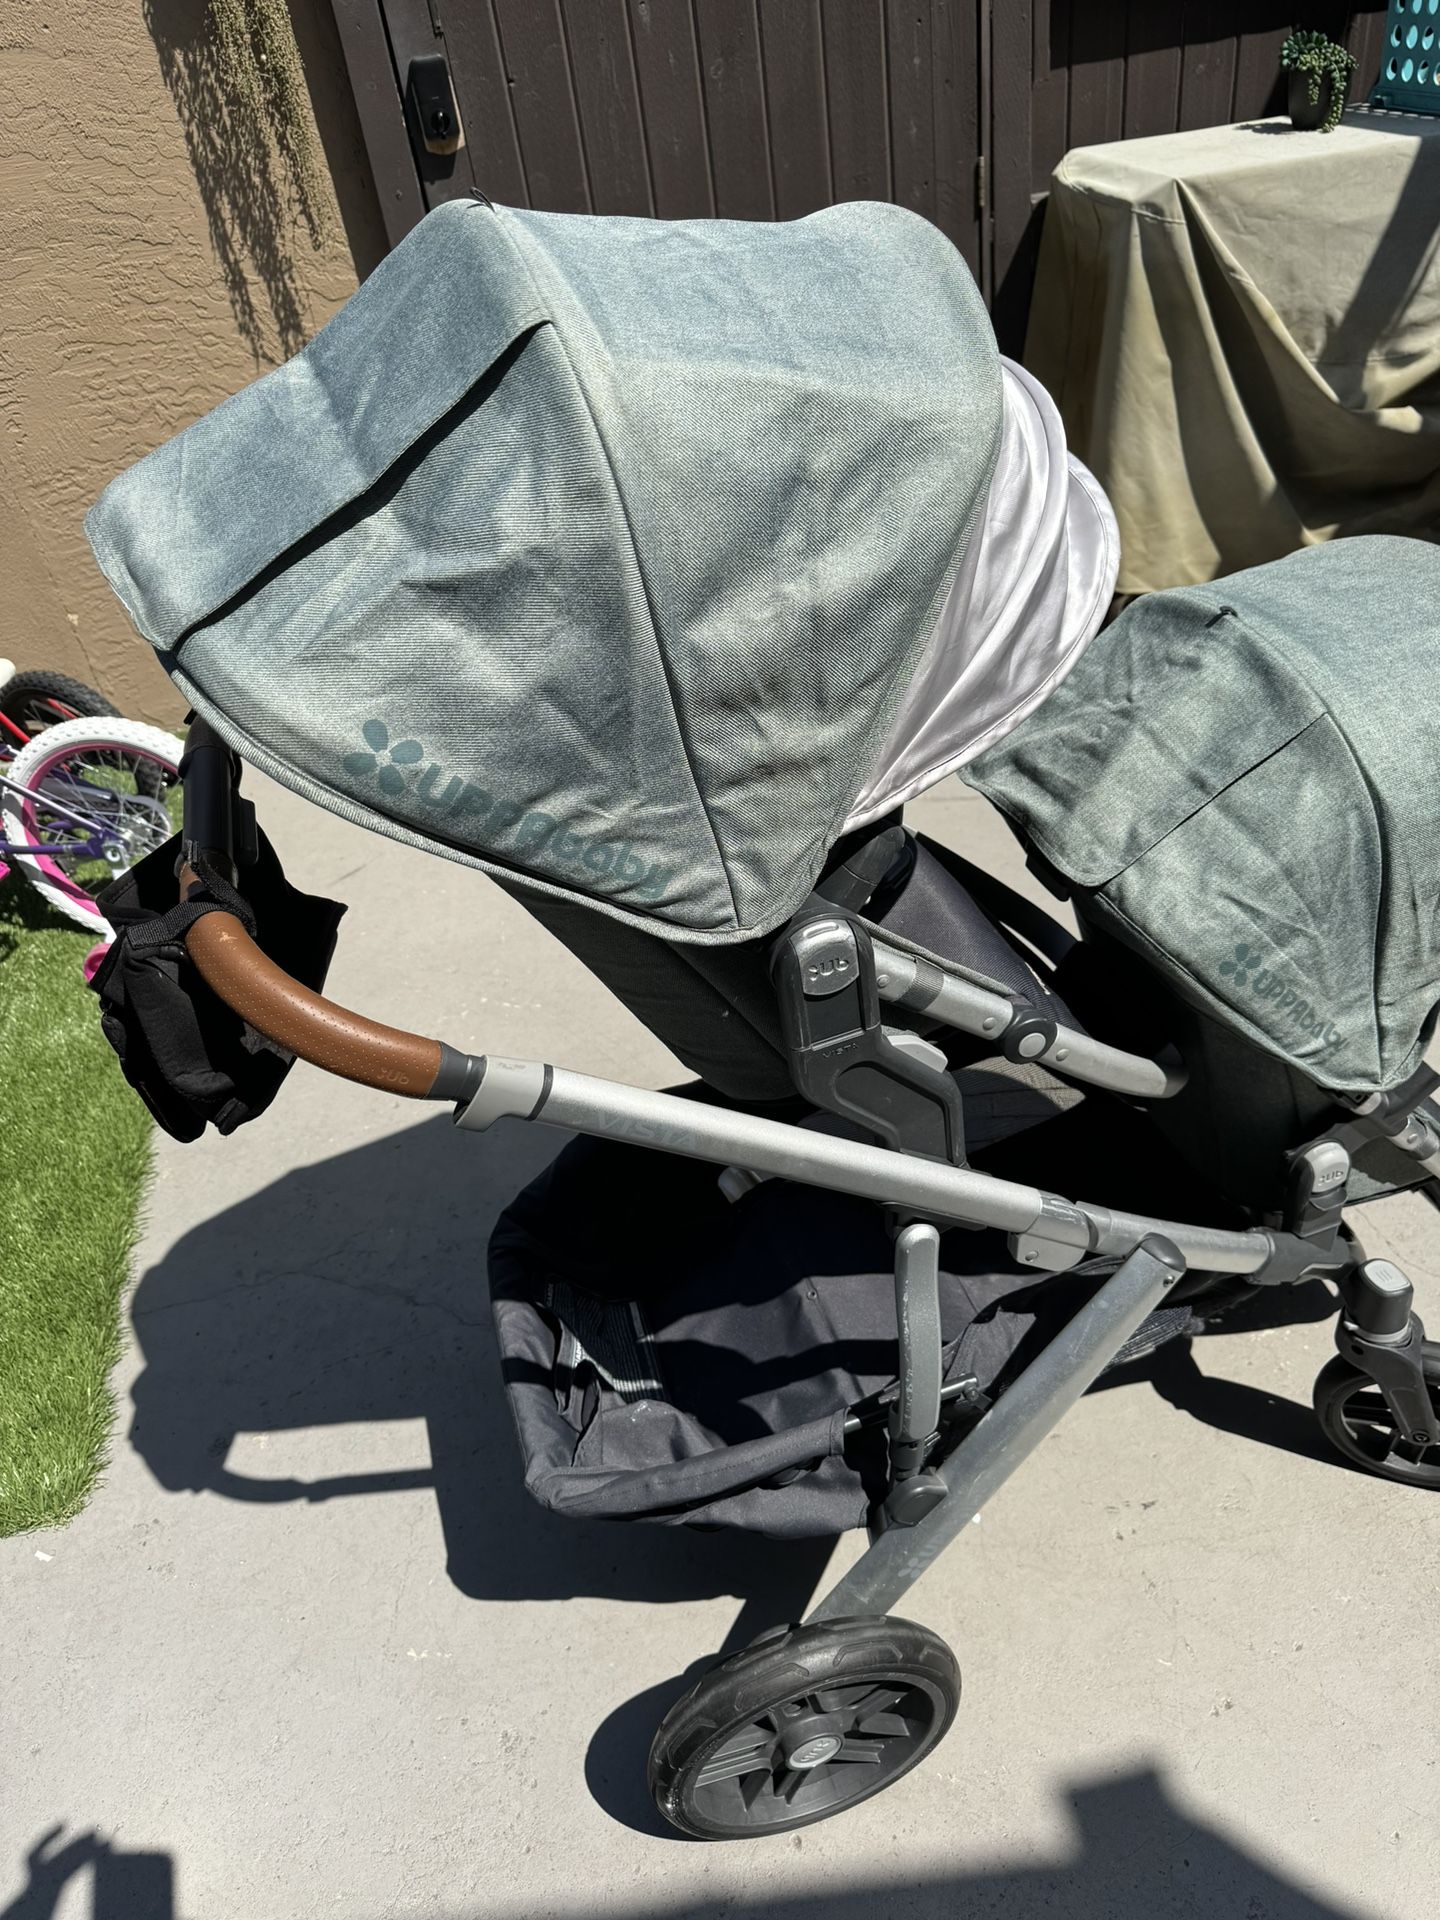 Uppa Baby Vista Stroller